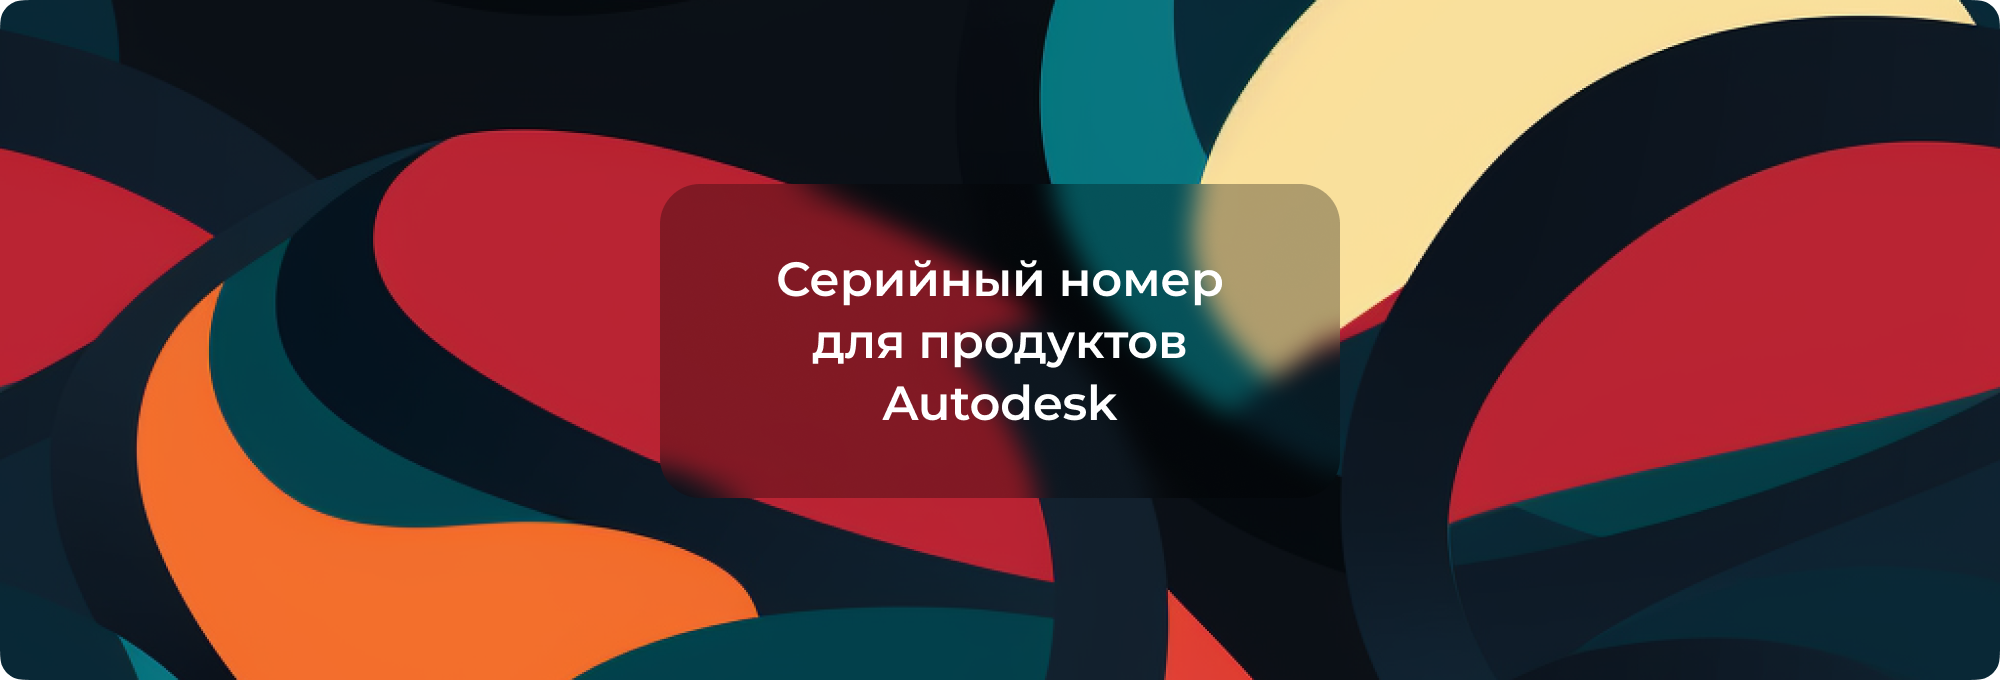 Где взять серийный номер для продуктов Autodesk?